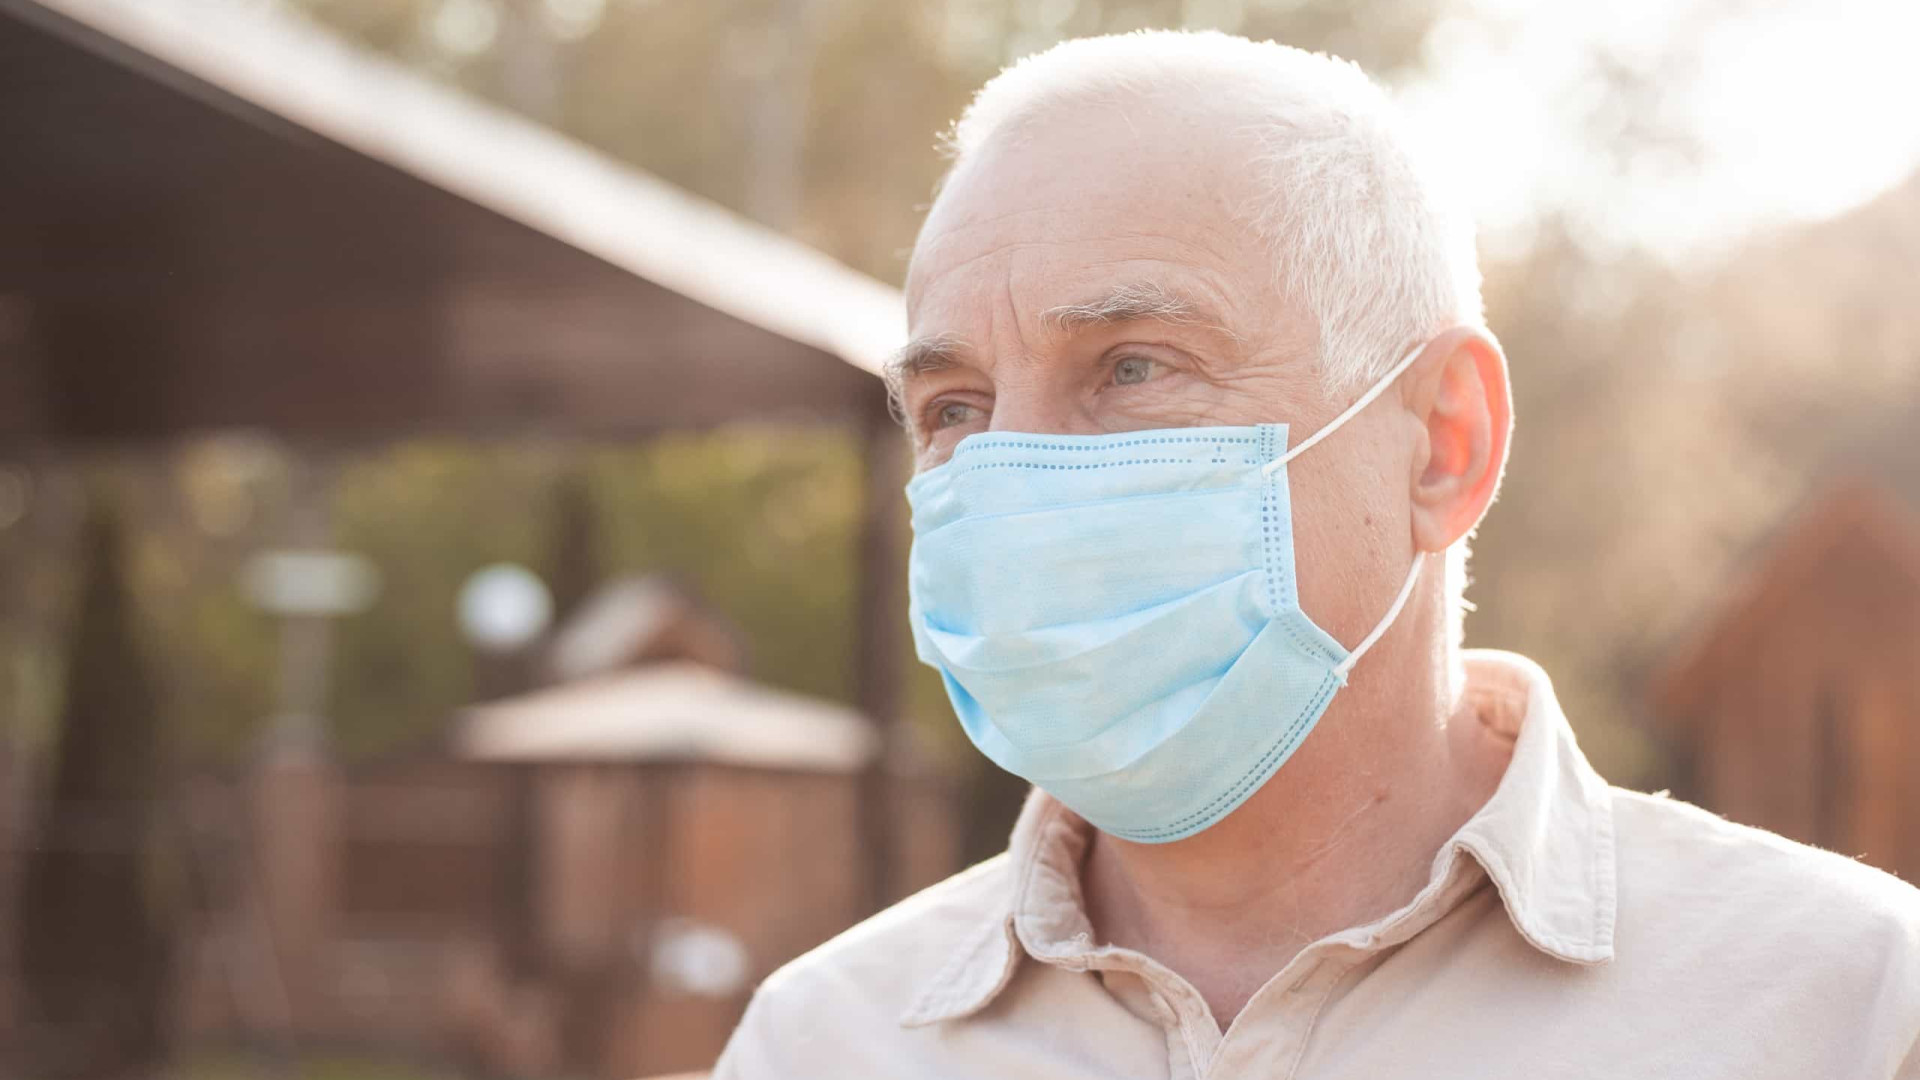 Estudo sugere que umidade da respiração aumenta eficácia da máscara